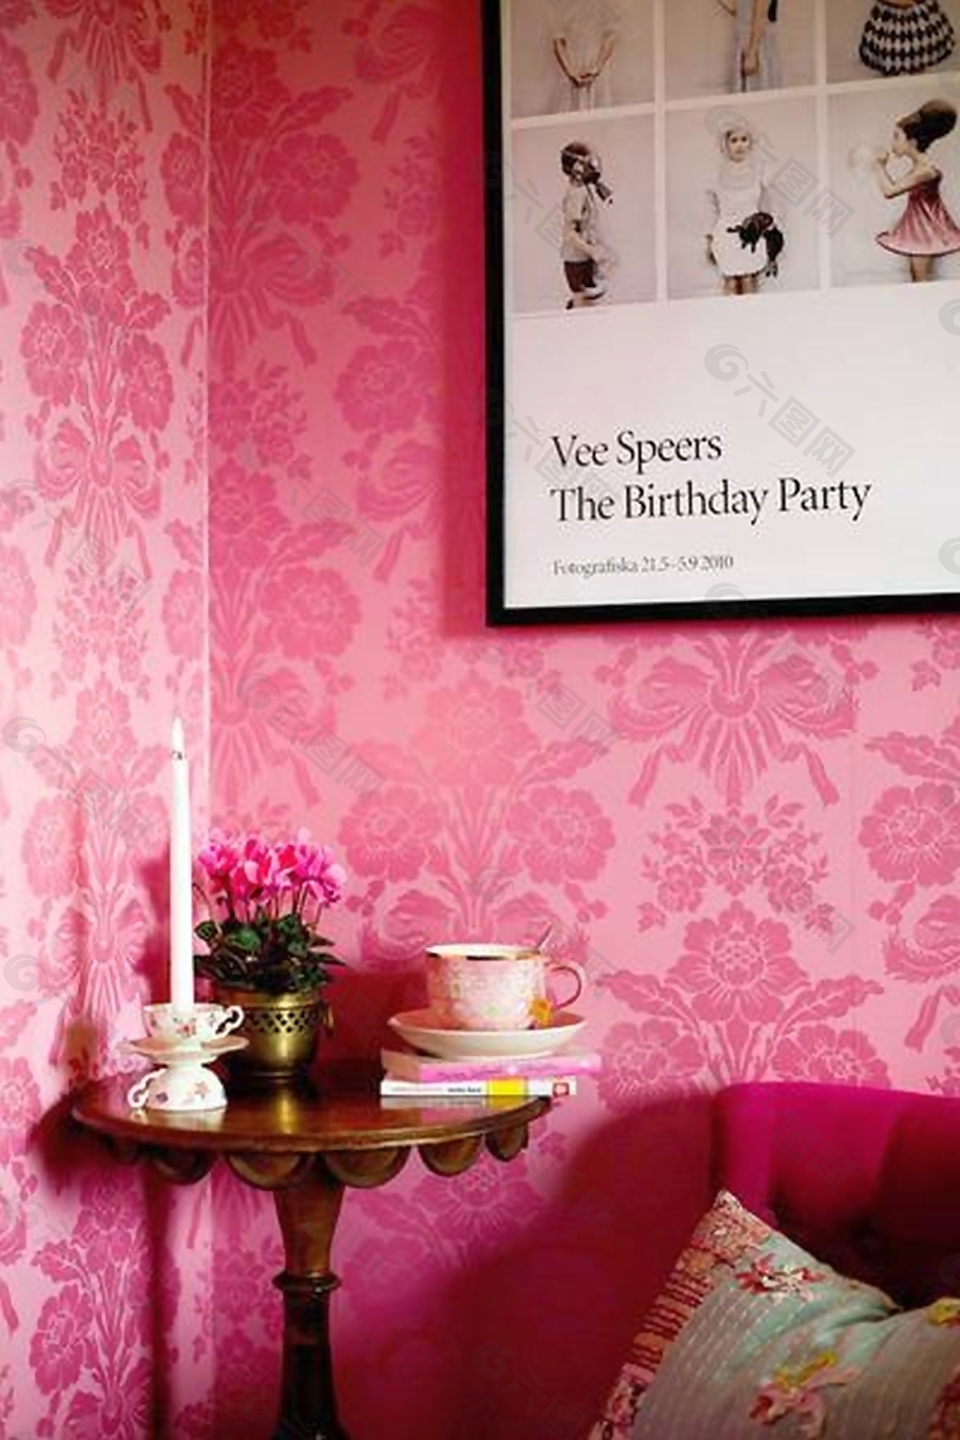 “暗藏玄机”的粉红色壁纸效果图